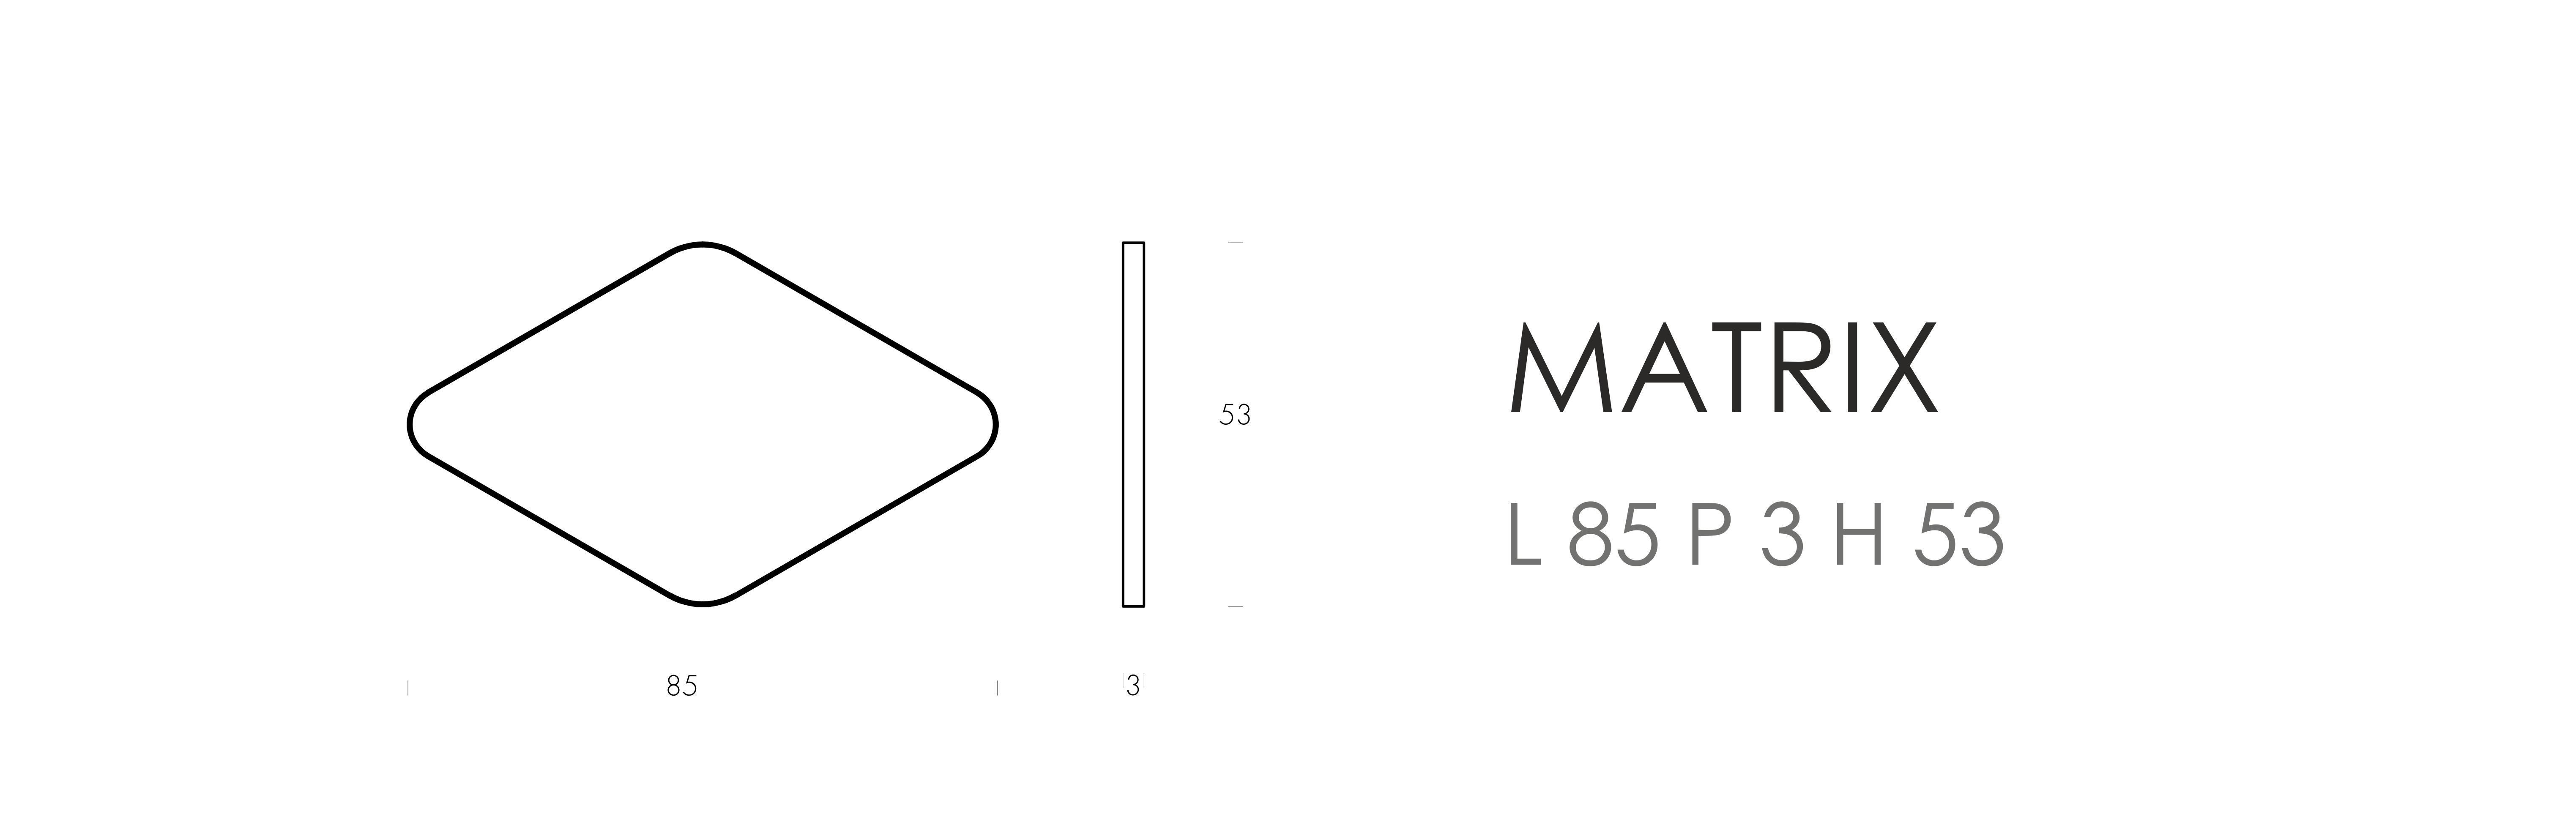 Matrix - L 85 P 3 H 53